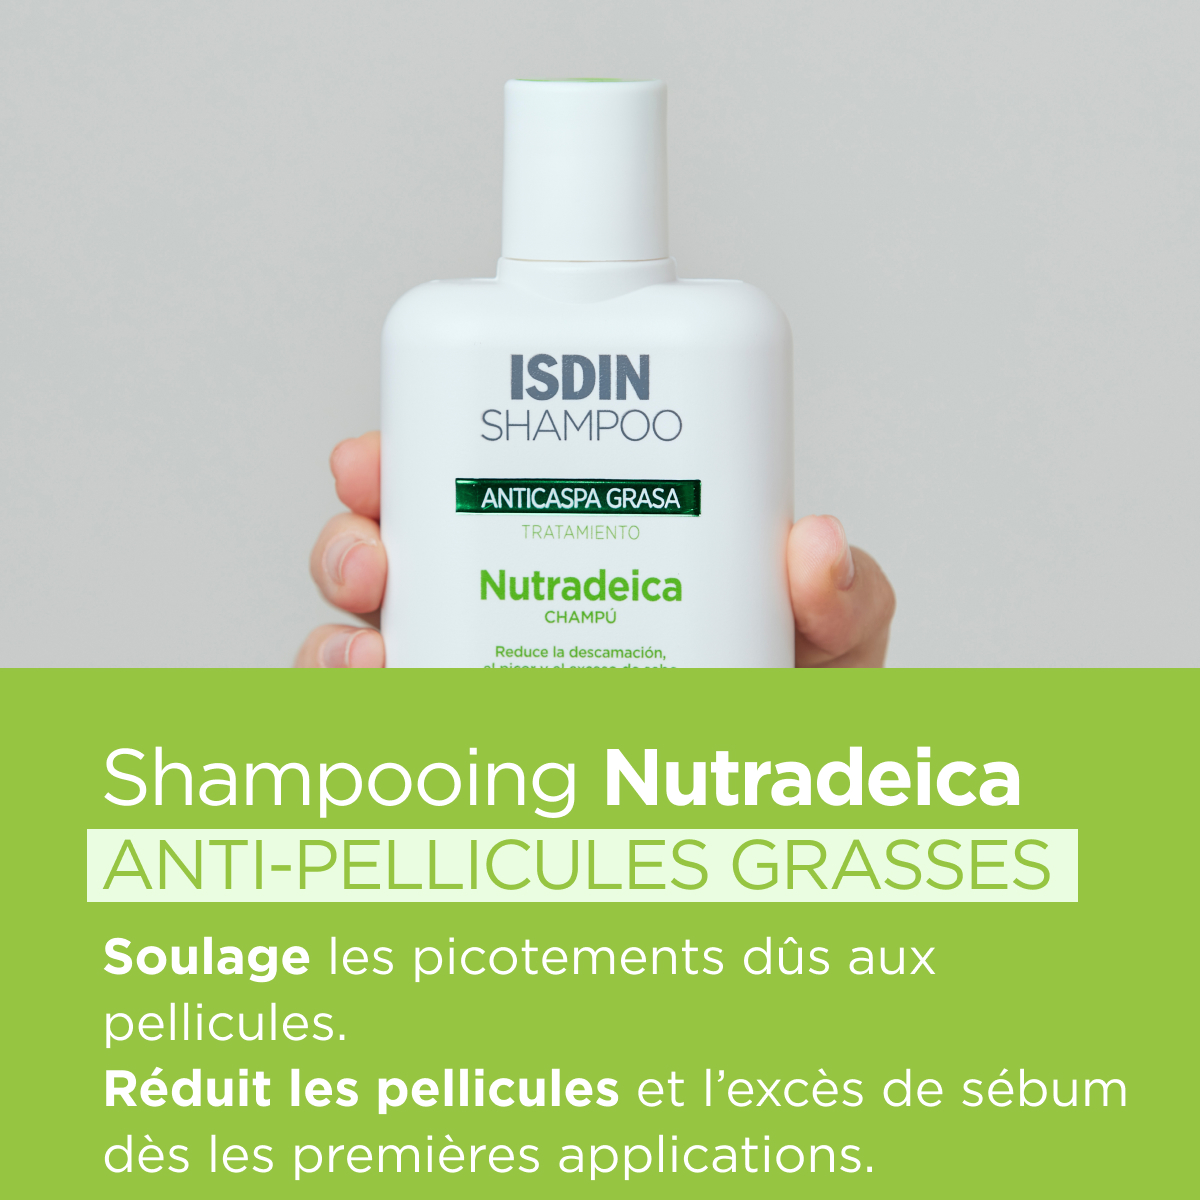 ISDIN Shampoo